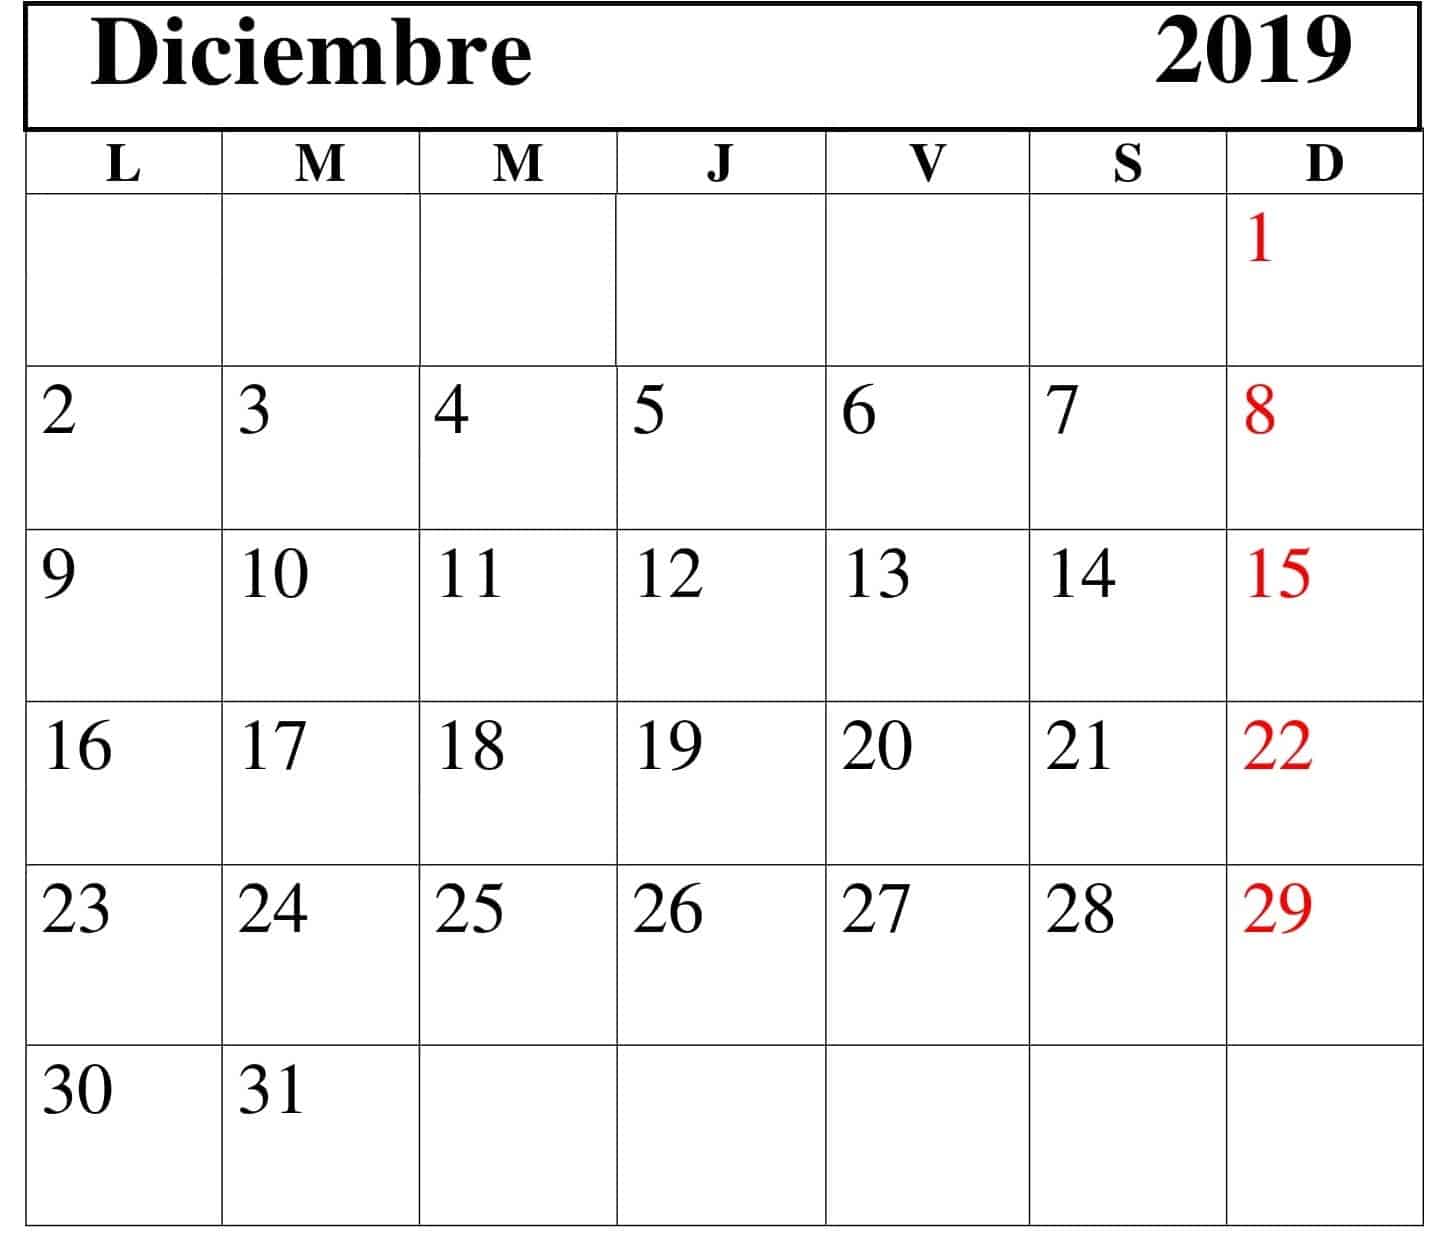 Calendario Diciembre 2019 Chile 